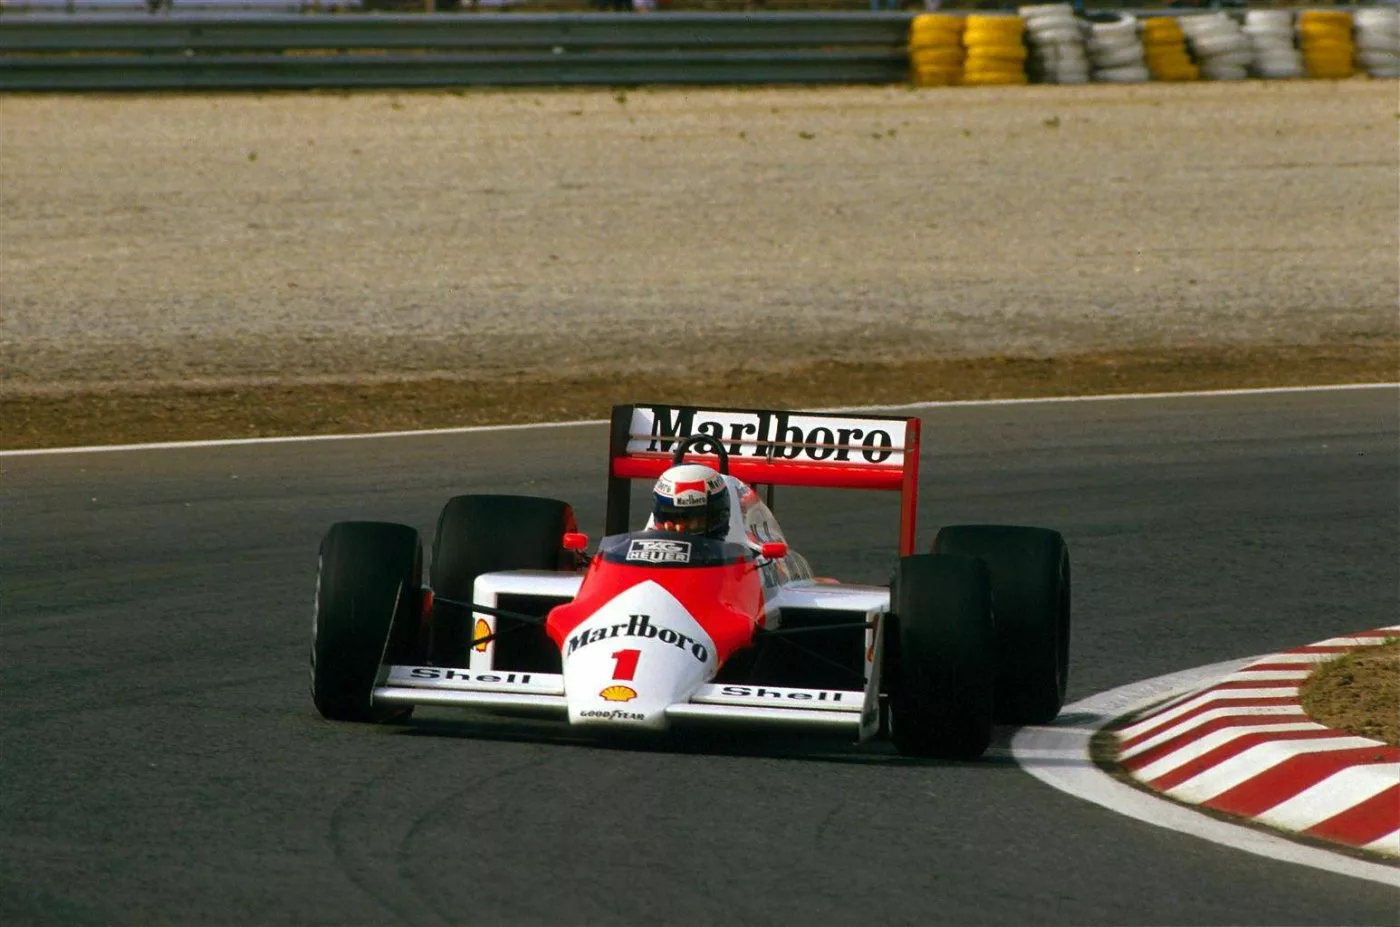 Richard Mille développe une montre pour Alain Prost - L'Équipe